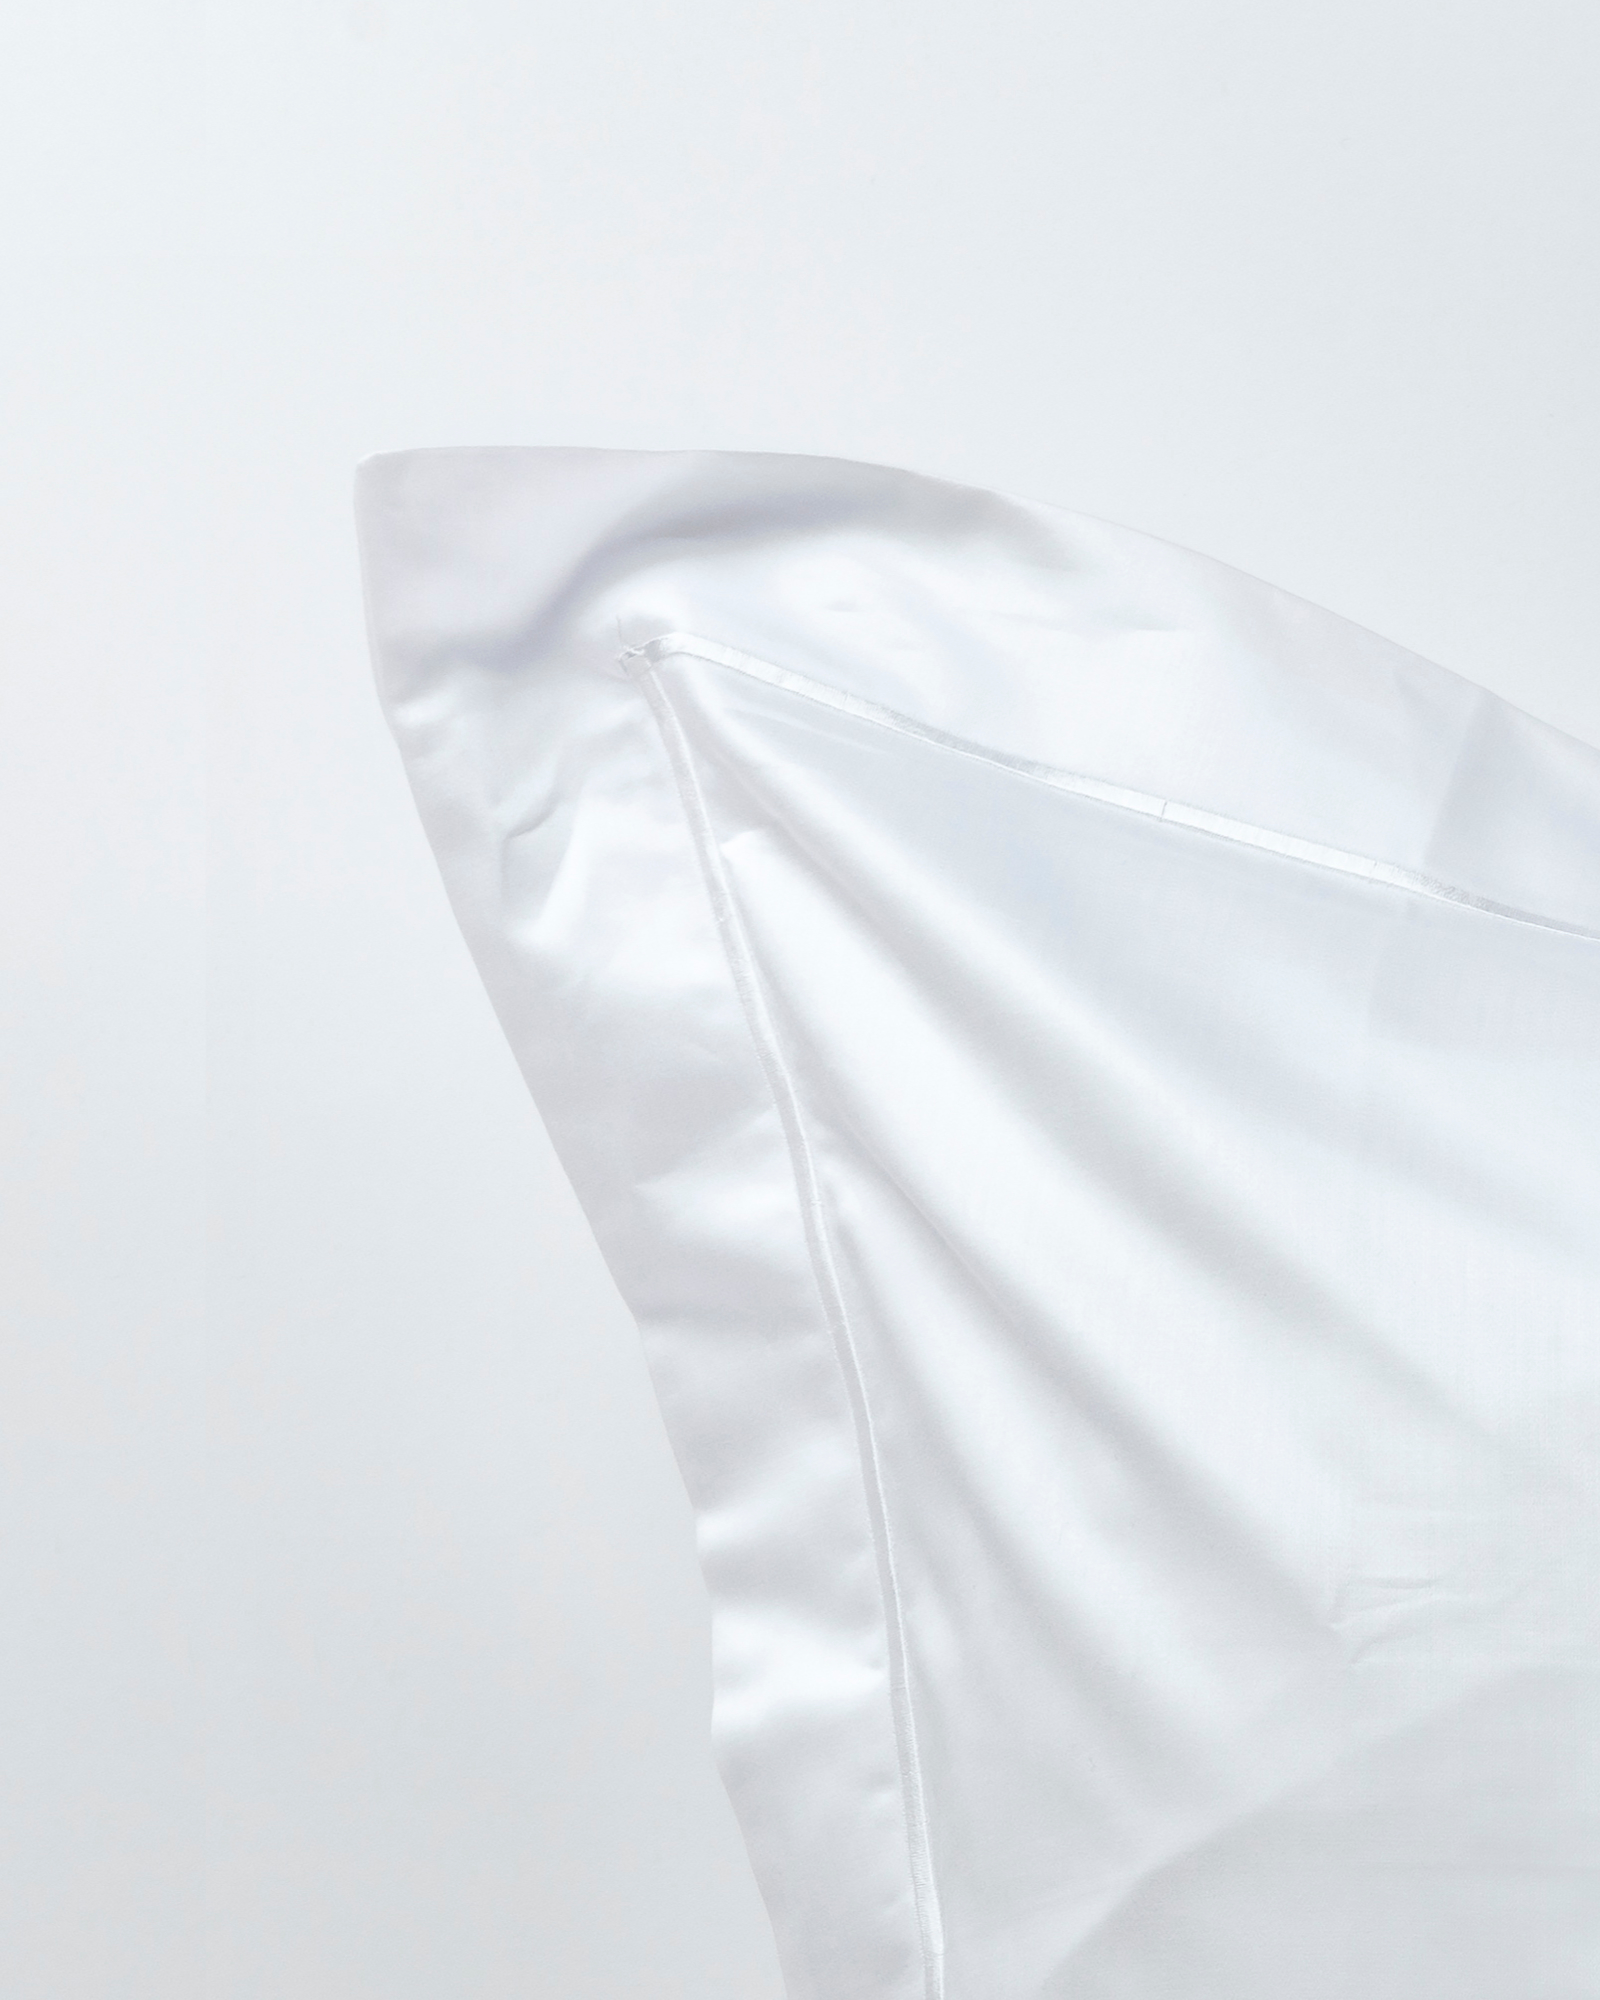 MARIE-MARIE - Pillowcase CLAIRE White - 50x75 cm - White